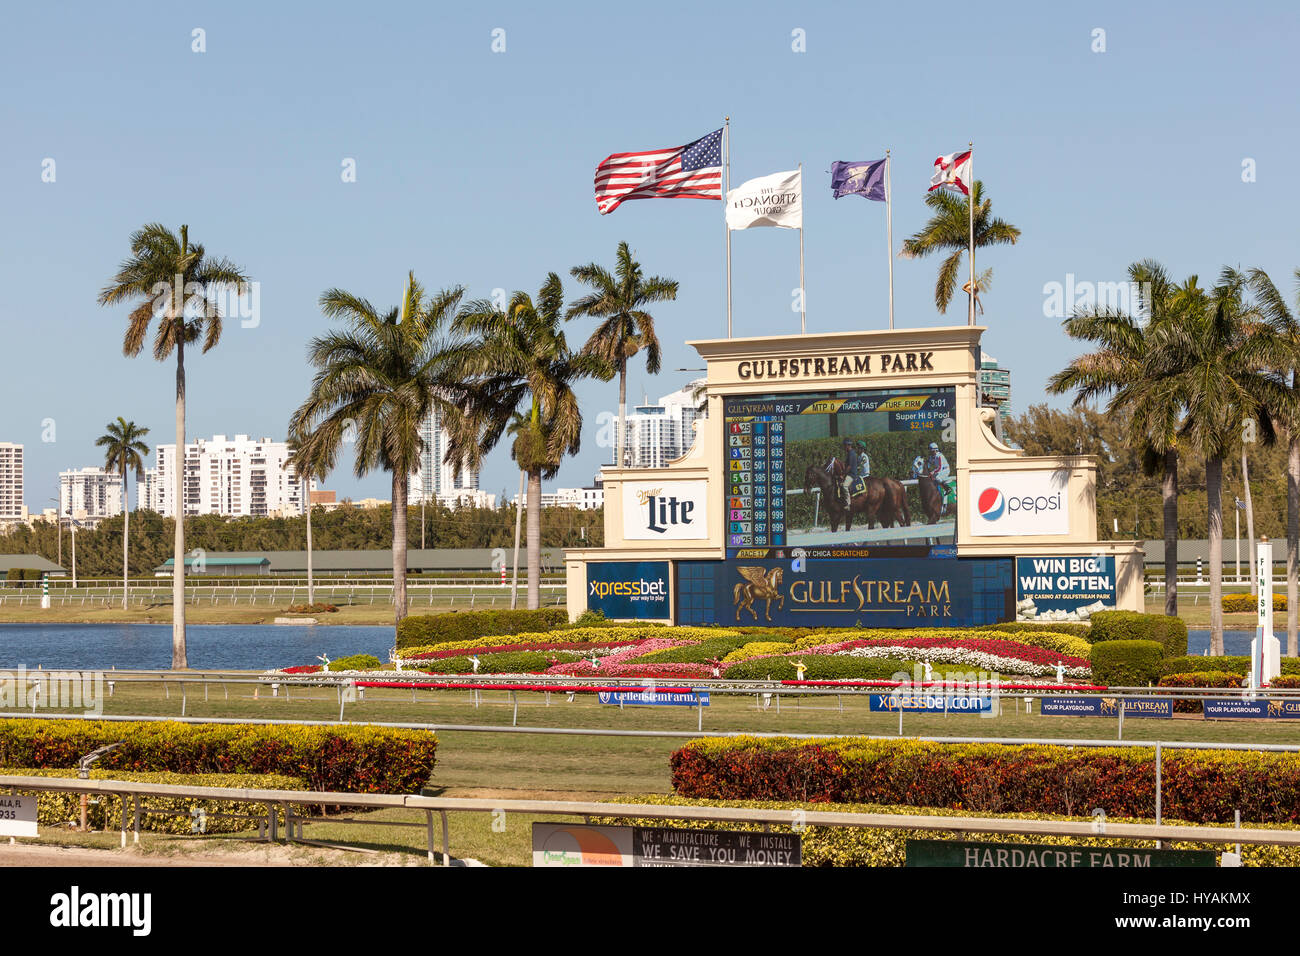 HALLANDALE BEACH, EE.UU. - Mar 11, 2017: la pista de carreras de caballos en el Gulfstream Park en Hallandale Beach, Florida, Estados Unidos Foto de stock